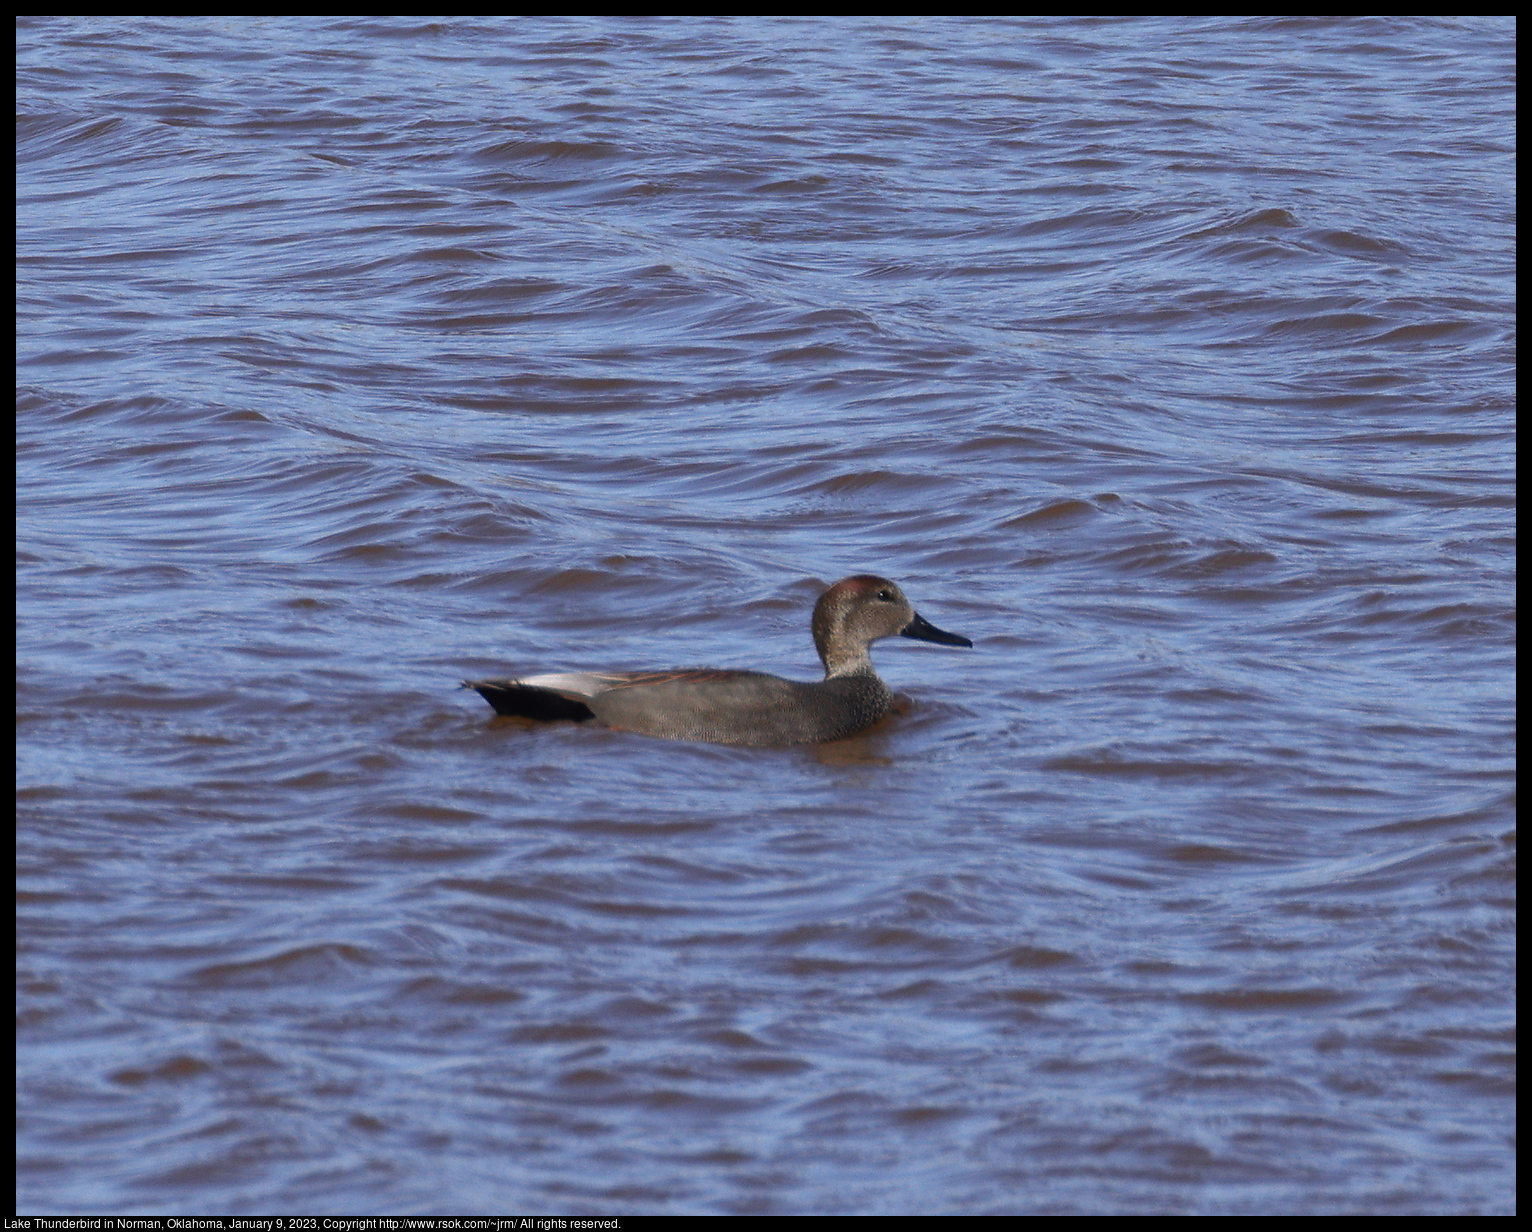 Gadwall (Mareca strepera) at Lake Thunderbird in Norman, Oklahoma, January 9, 2023